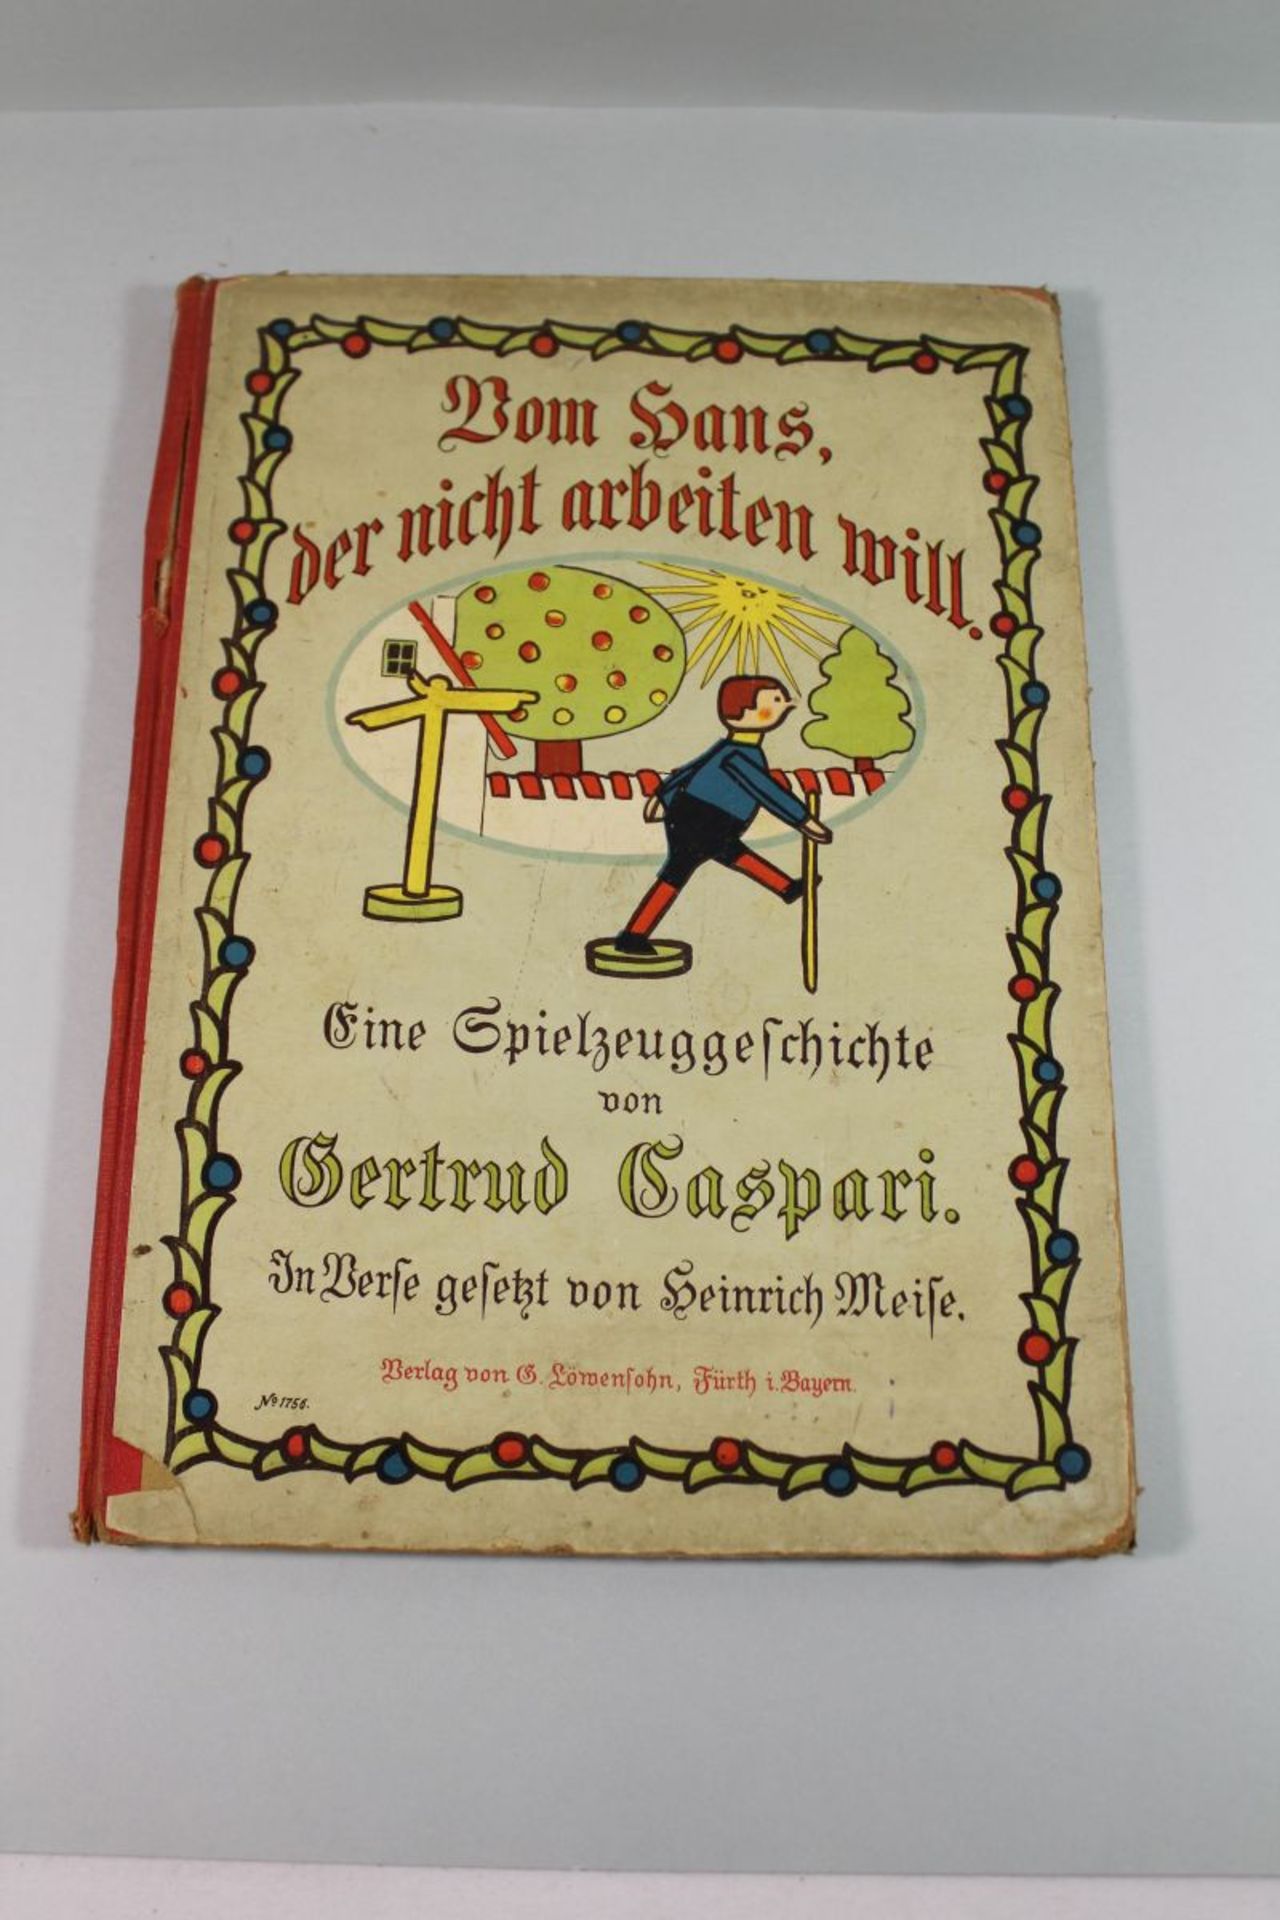 Vom Hans der nicht arbeiten will - Eine Spielzeuggeschichte, Gertrude Caspari, o.J. wohl um 1900,